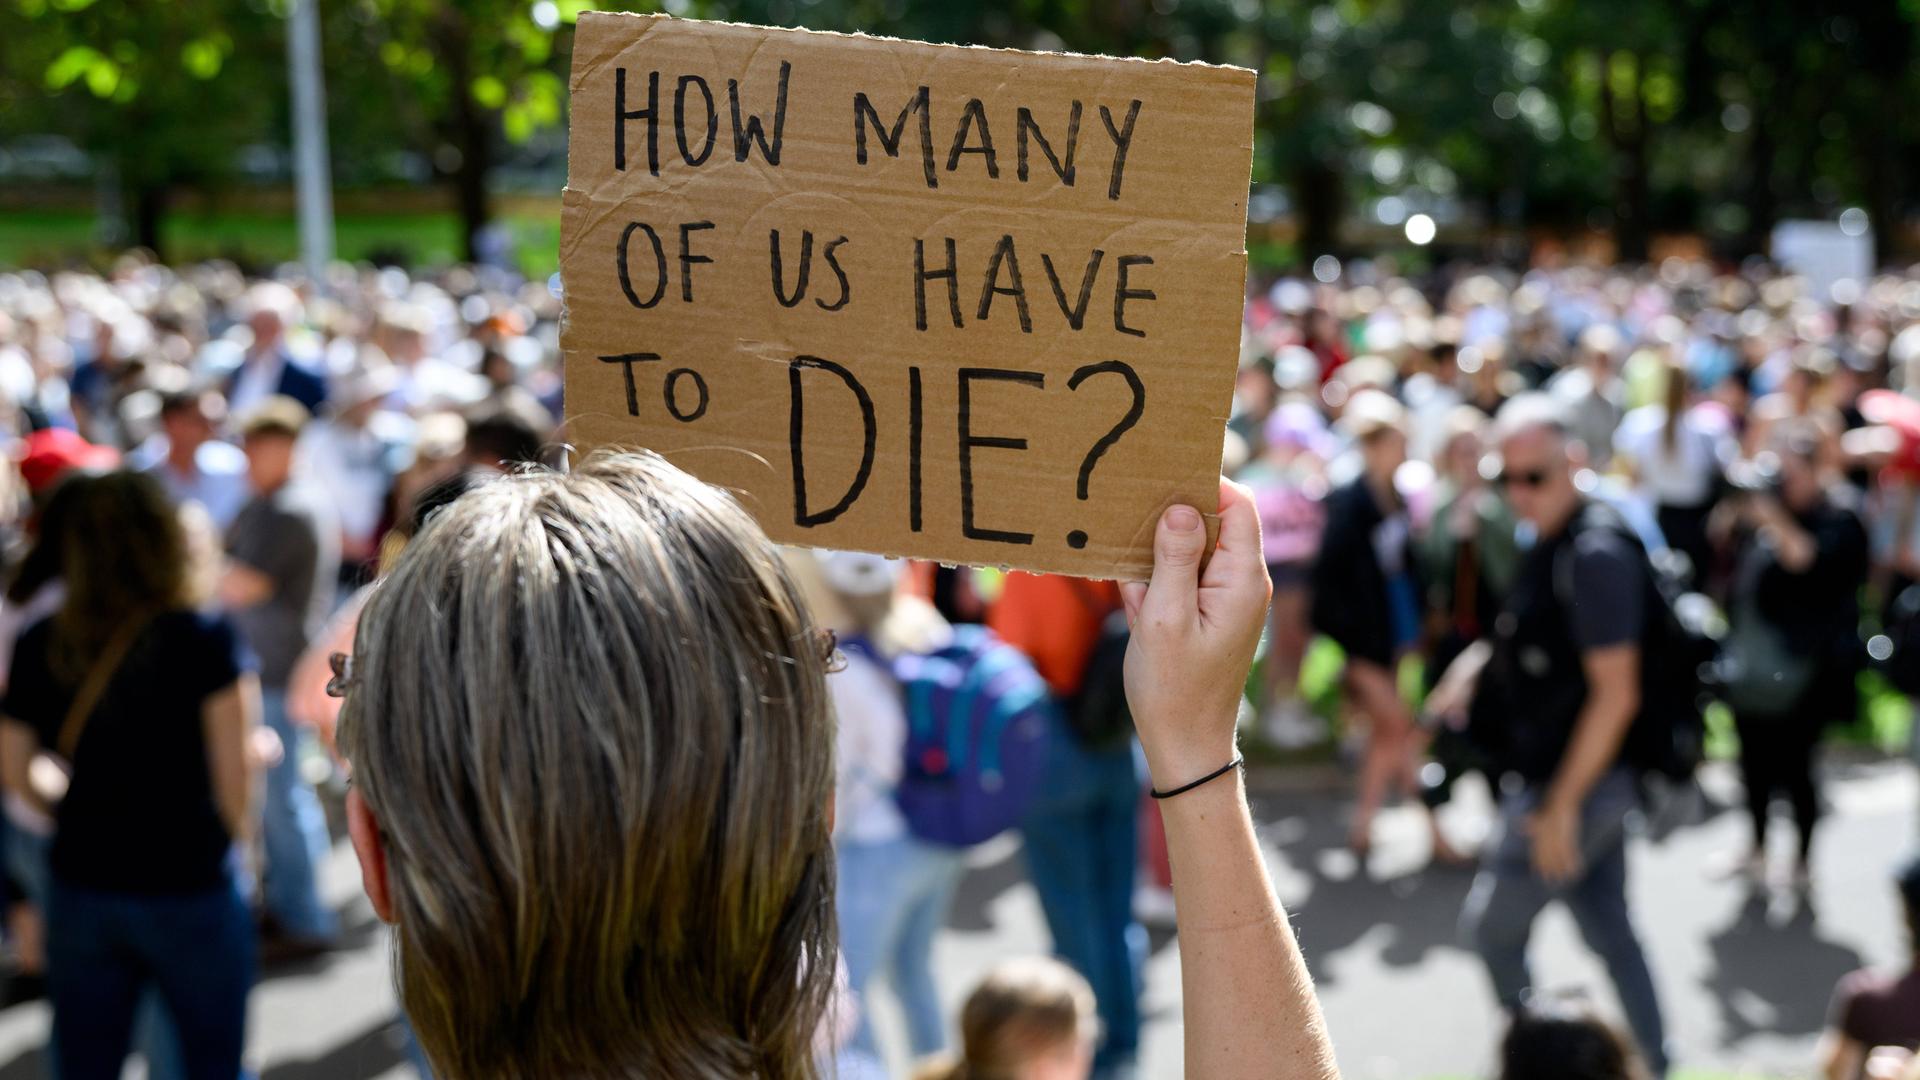 Eine Frau hält ein Pappschild, auf dem steht: "How many of us have to die?" Im Hintergrund sieht man Demo-Teilnehmer.